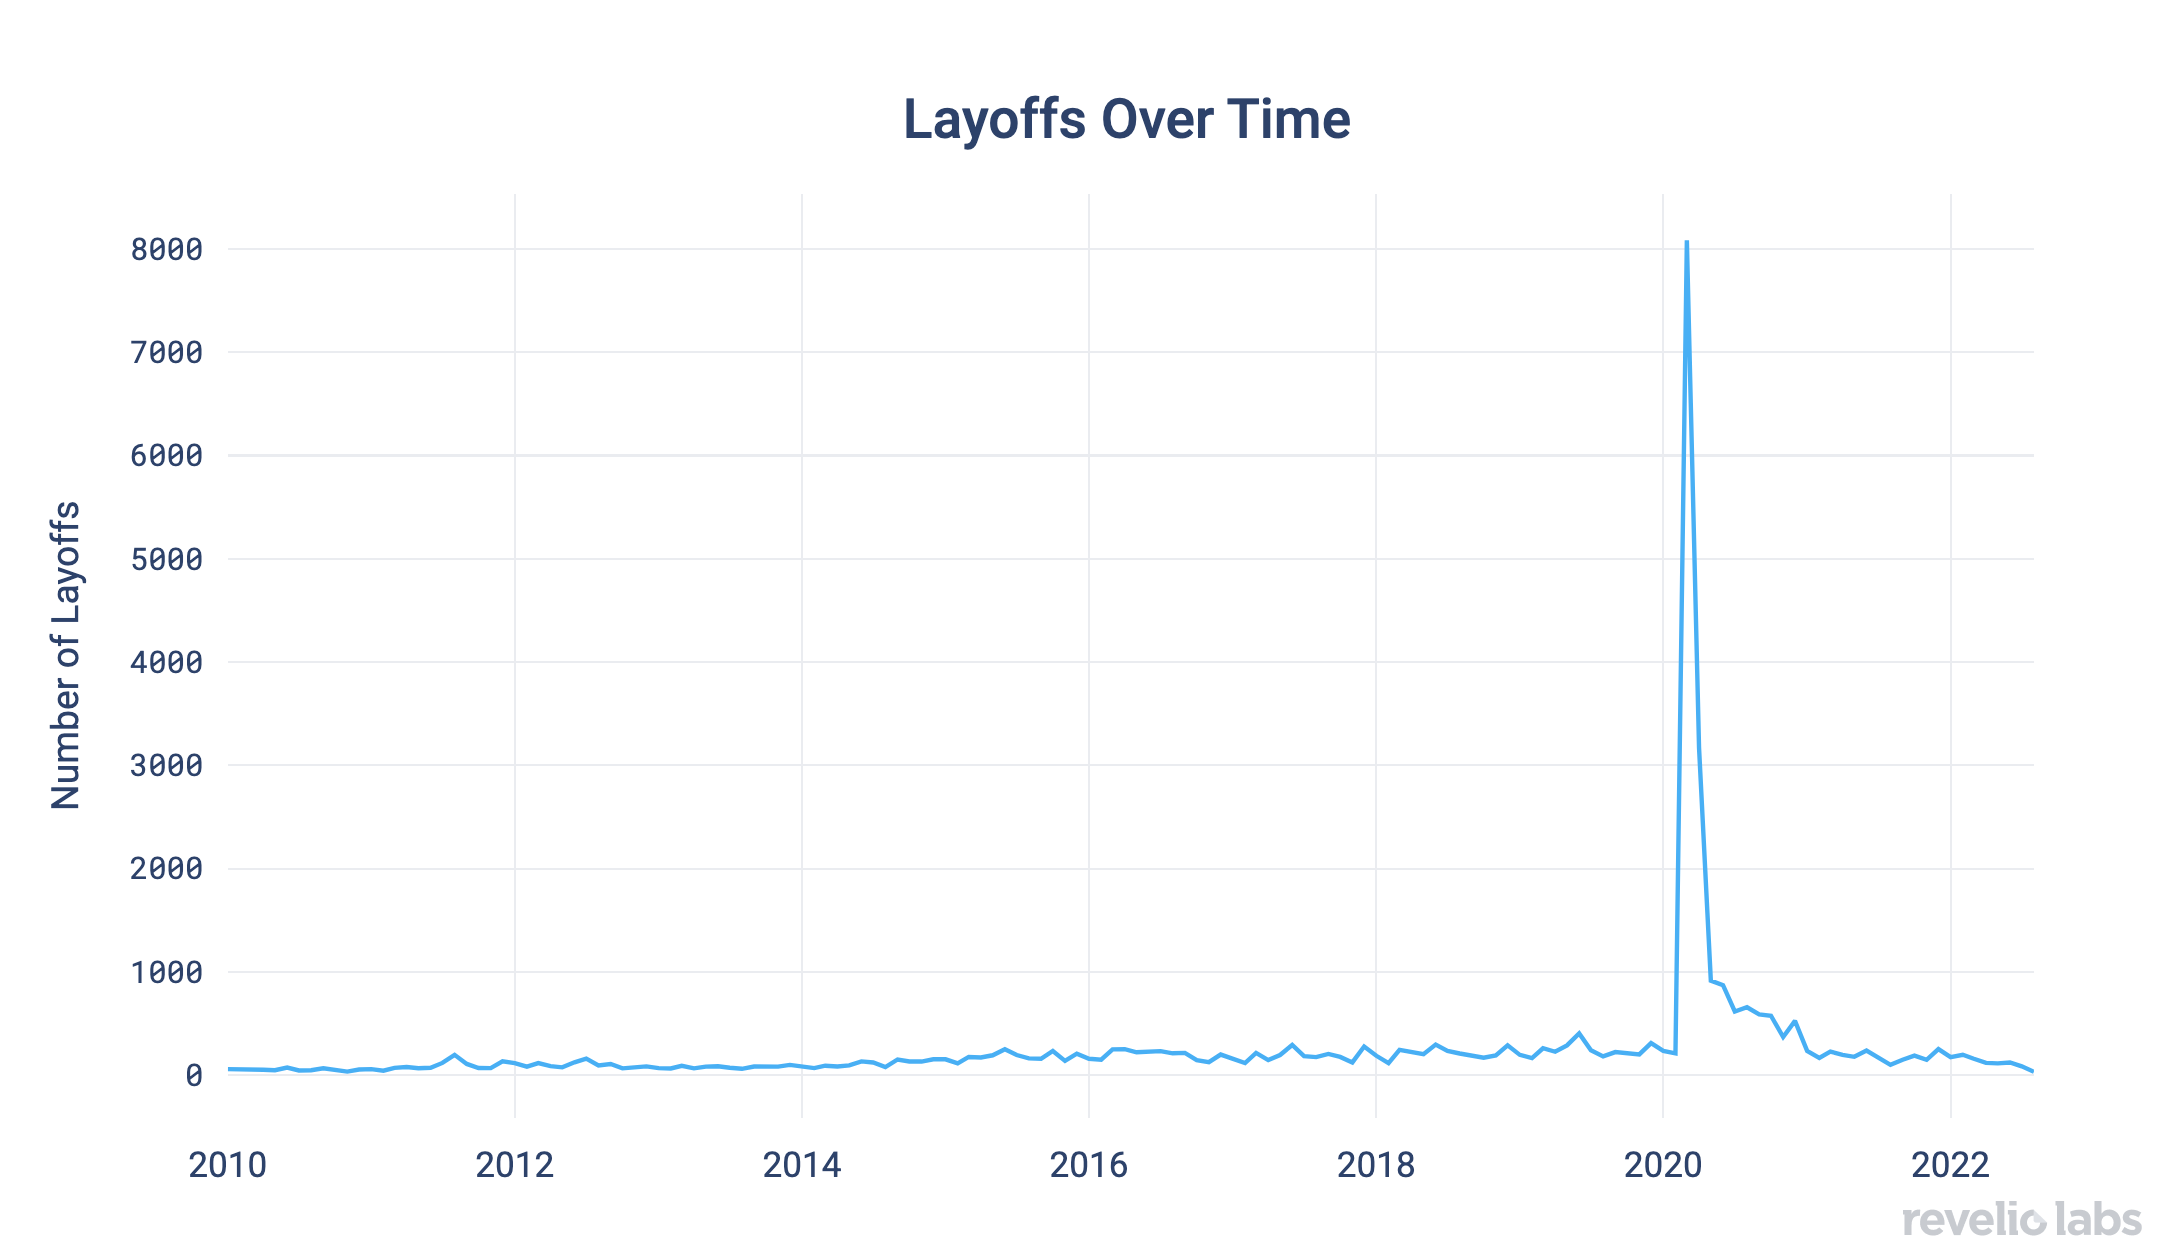 Warn layoffs over time